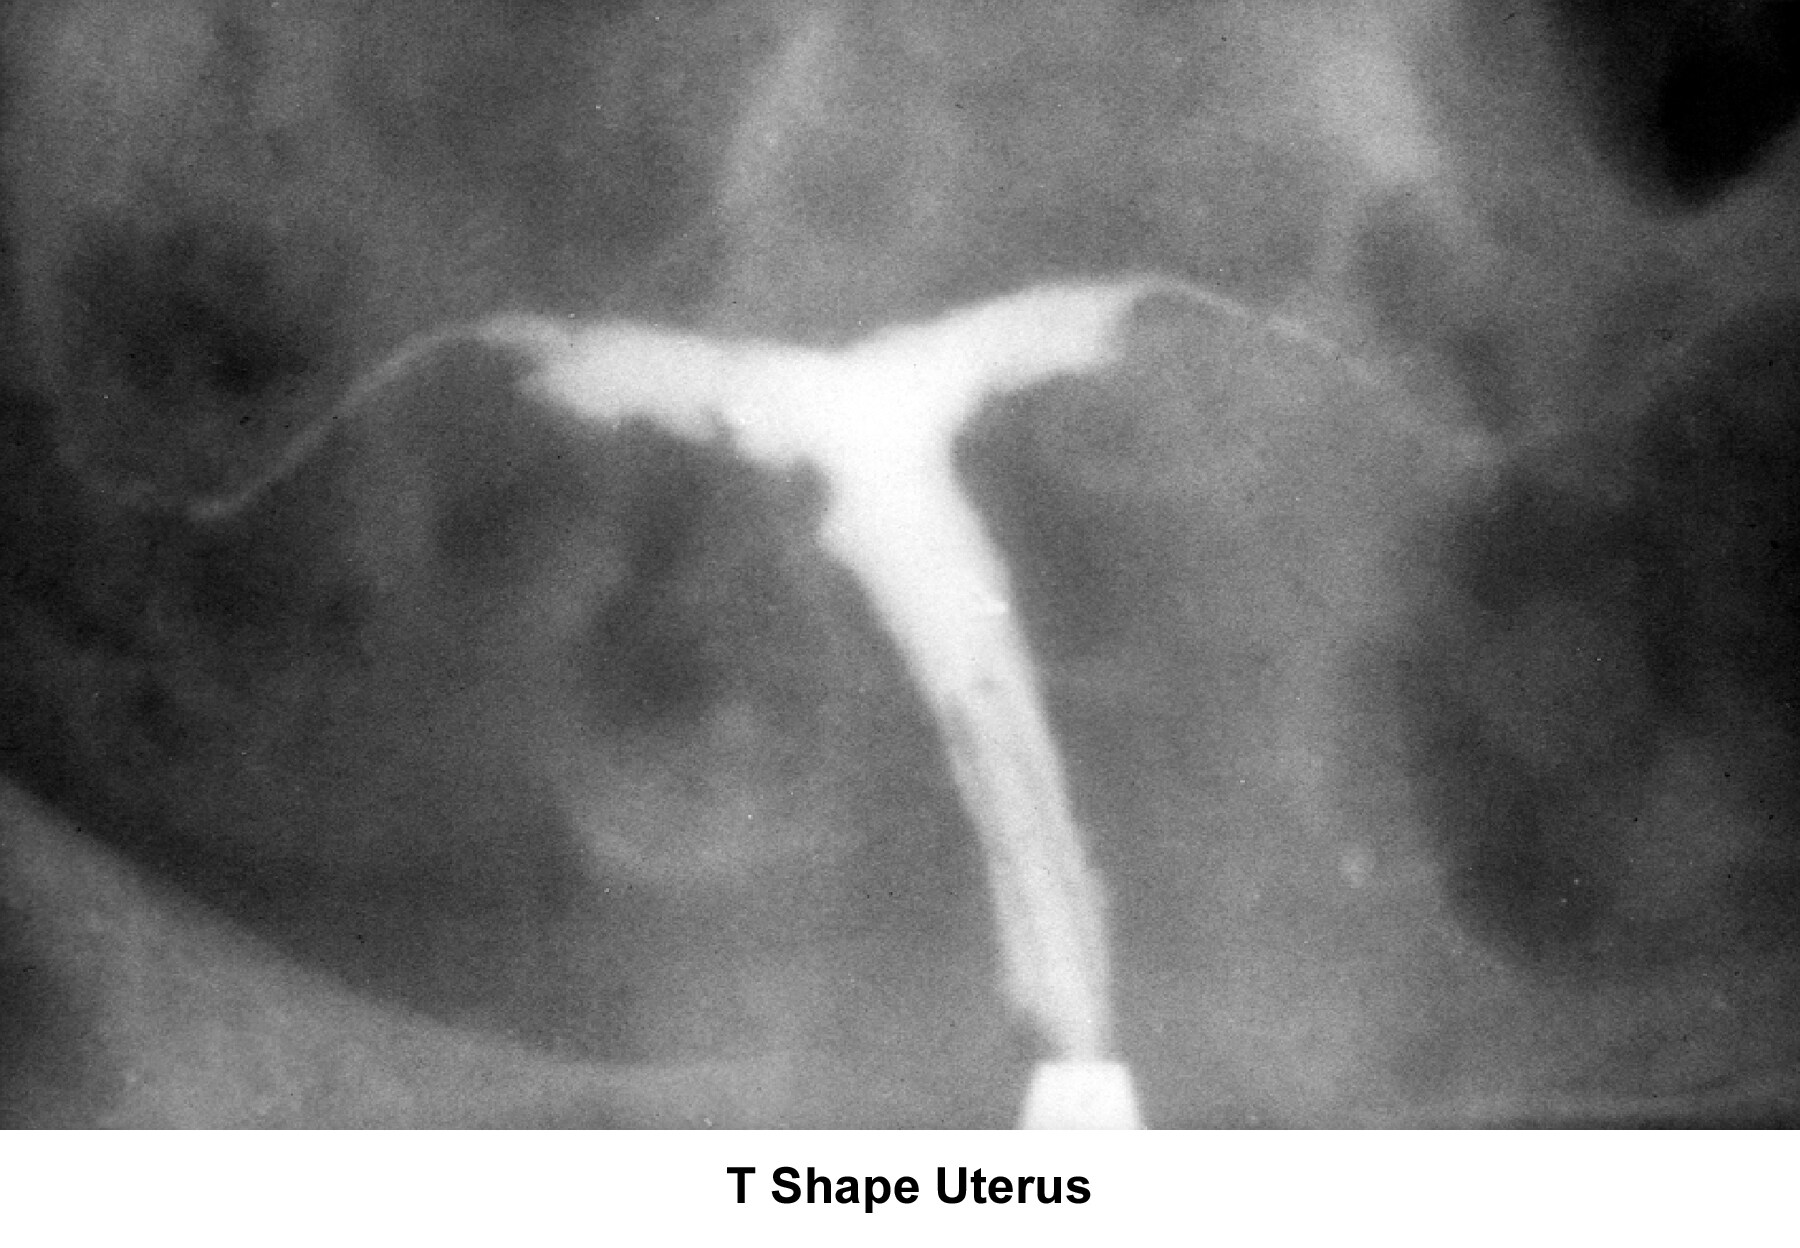 Infertility. T-shaped uterus. Image courtesy of J...